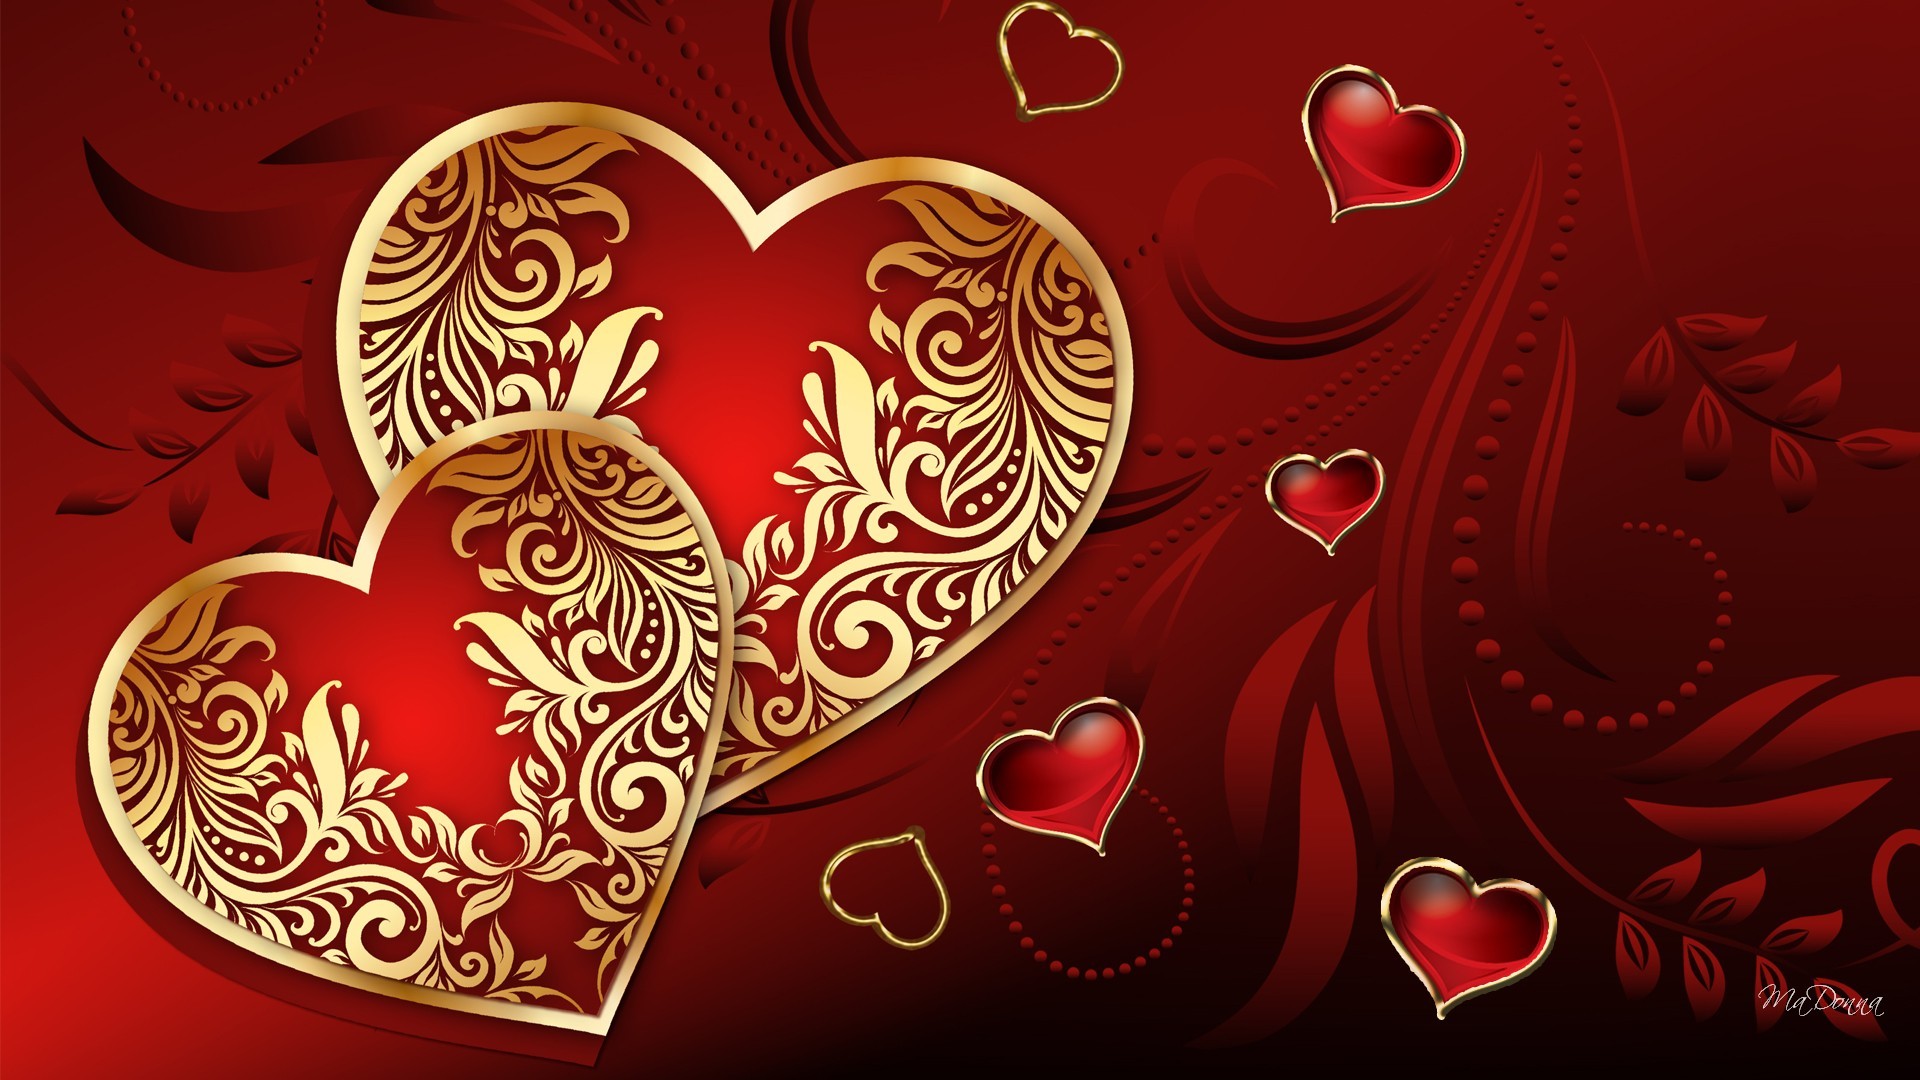 バレンタインハート写真壁紙,心臓,赤,バレンタイン・デー,愛,人体